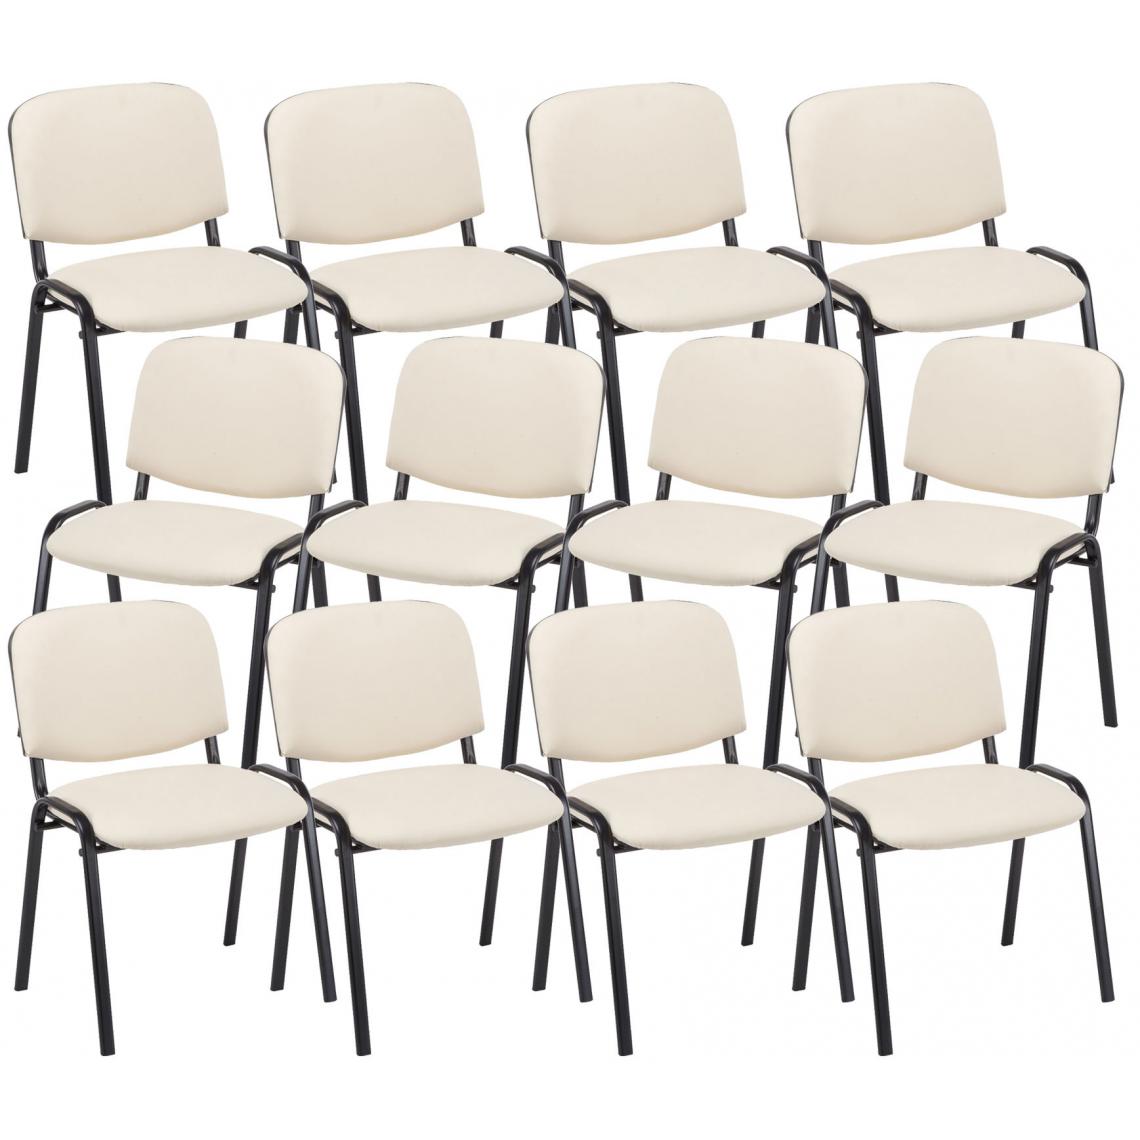 Icaverne - sublime Ensemble de 12 chaises visiteurs famille Bamako en cuir artificiel couleur crème - Chaises